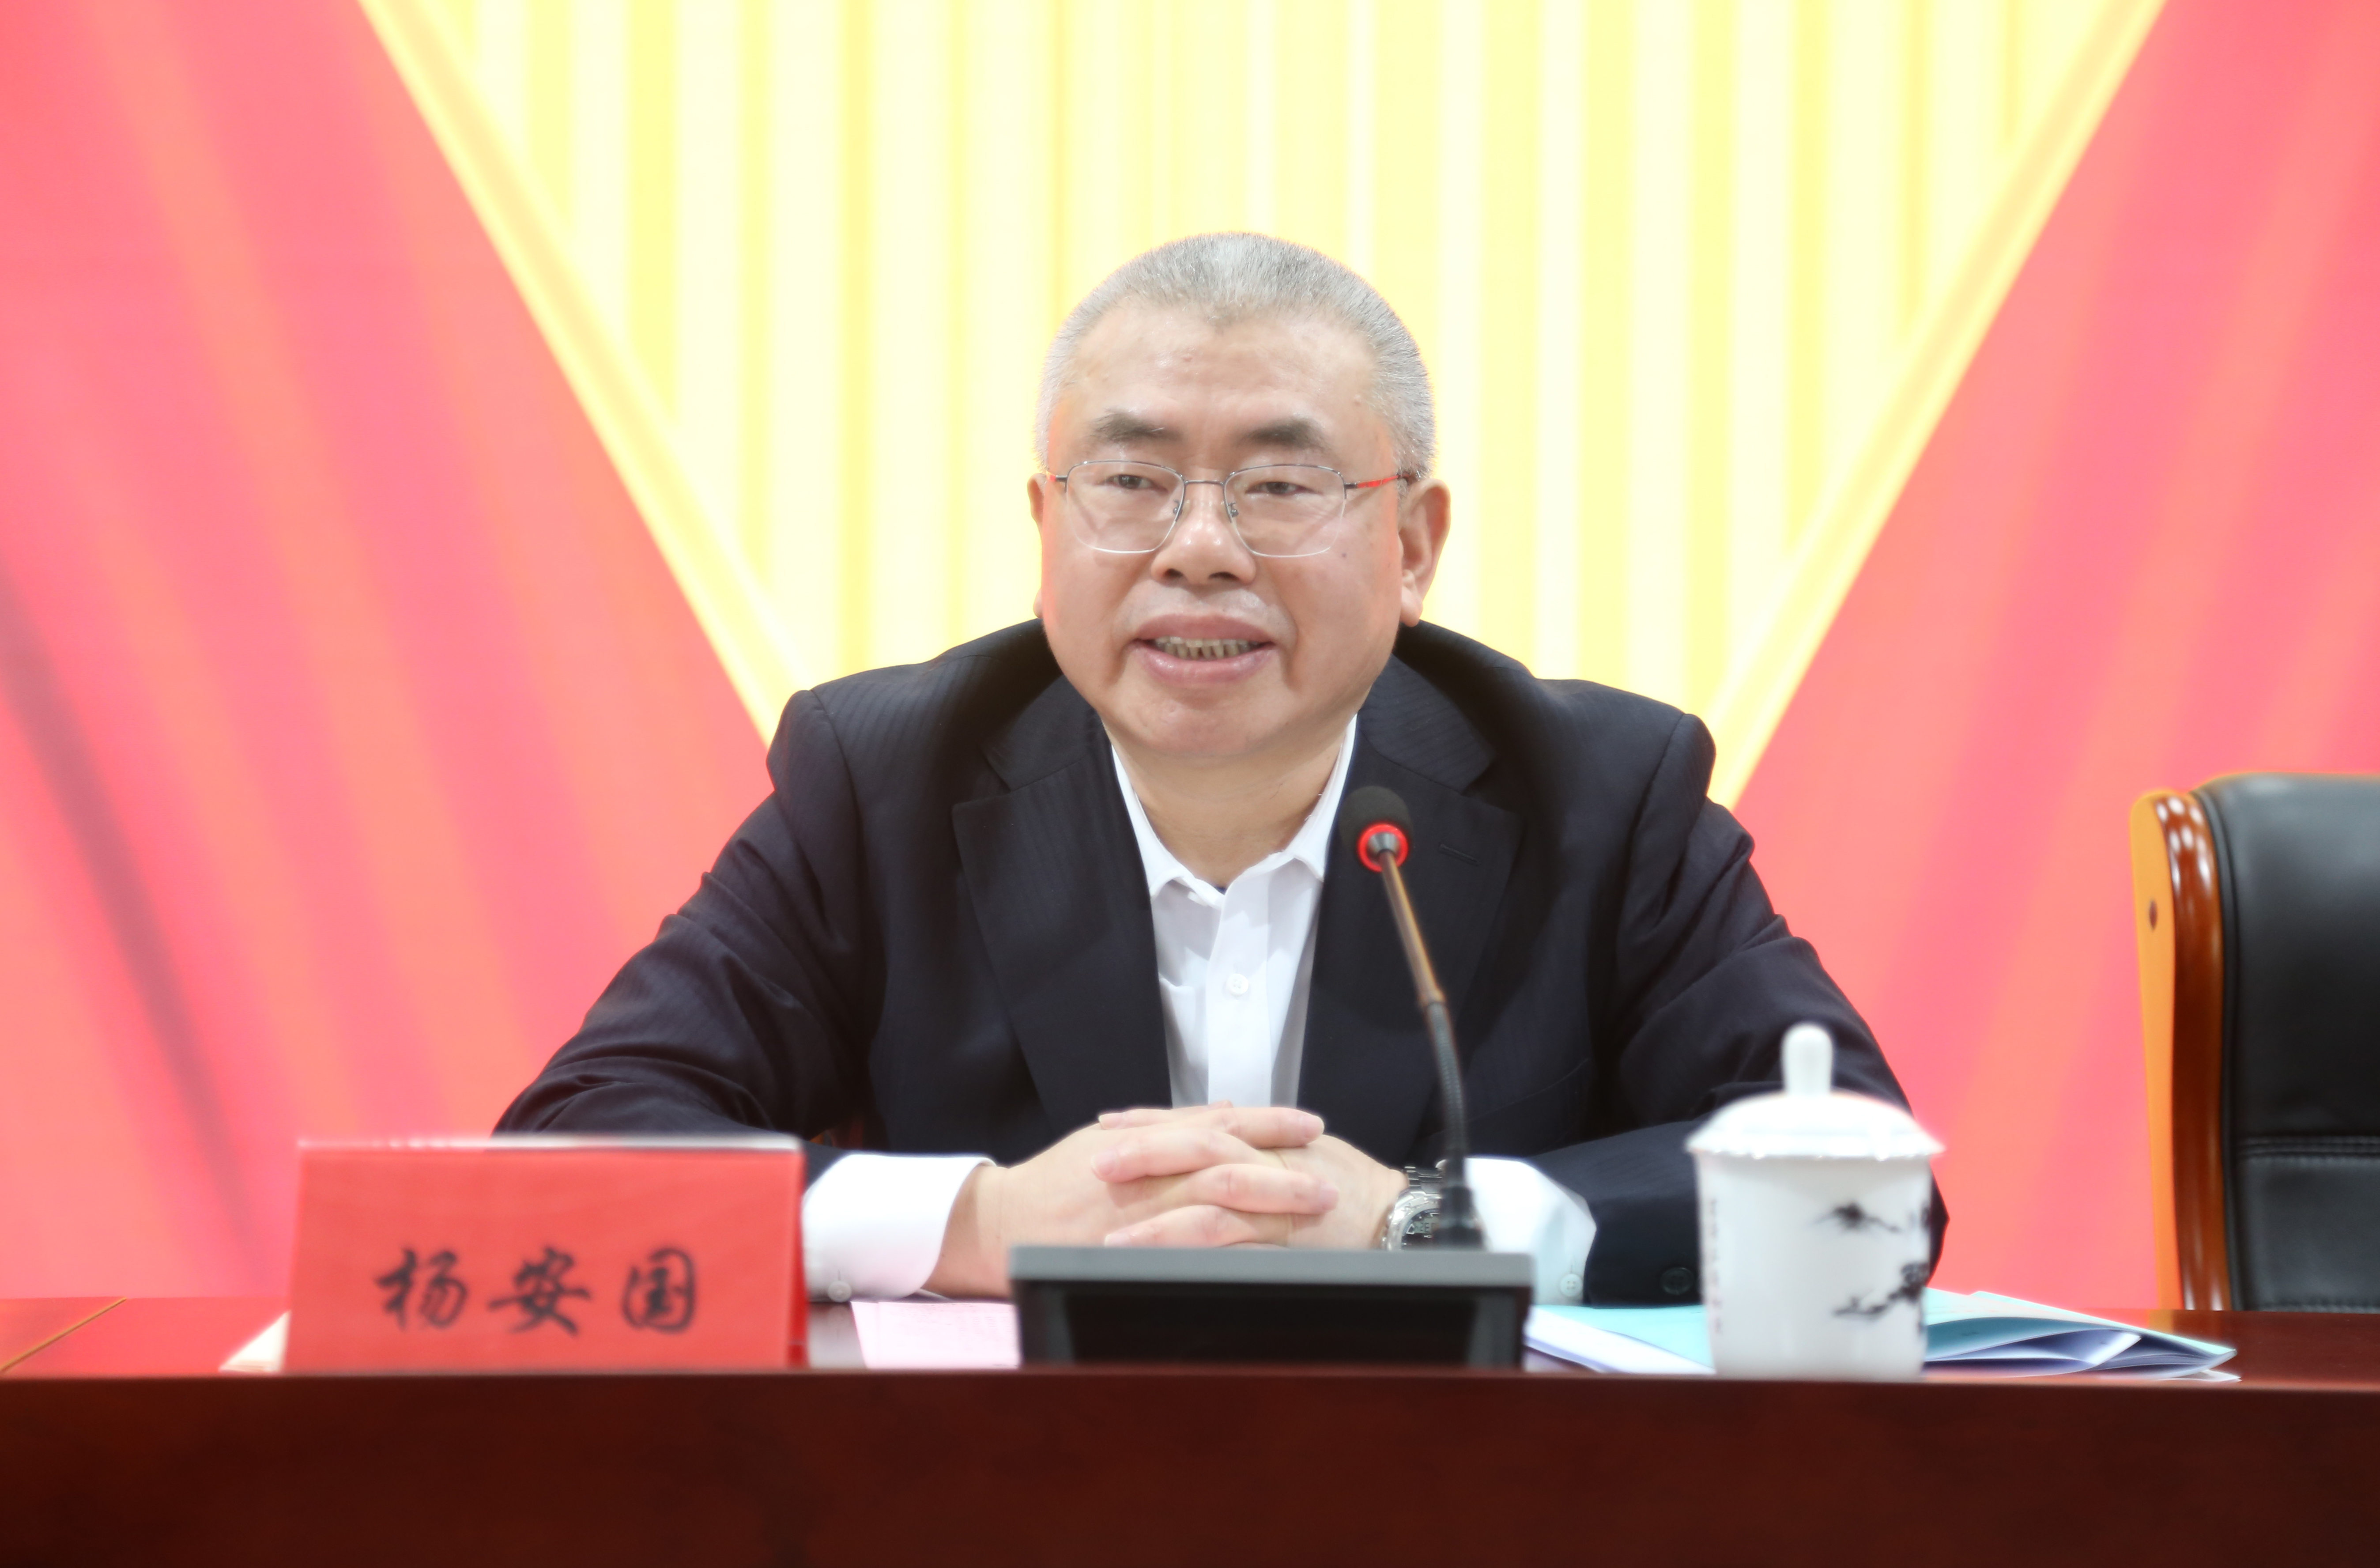 集团公司党委书记、董事长、总经理杨安国出席会议并讲话.JPG